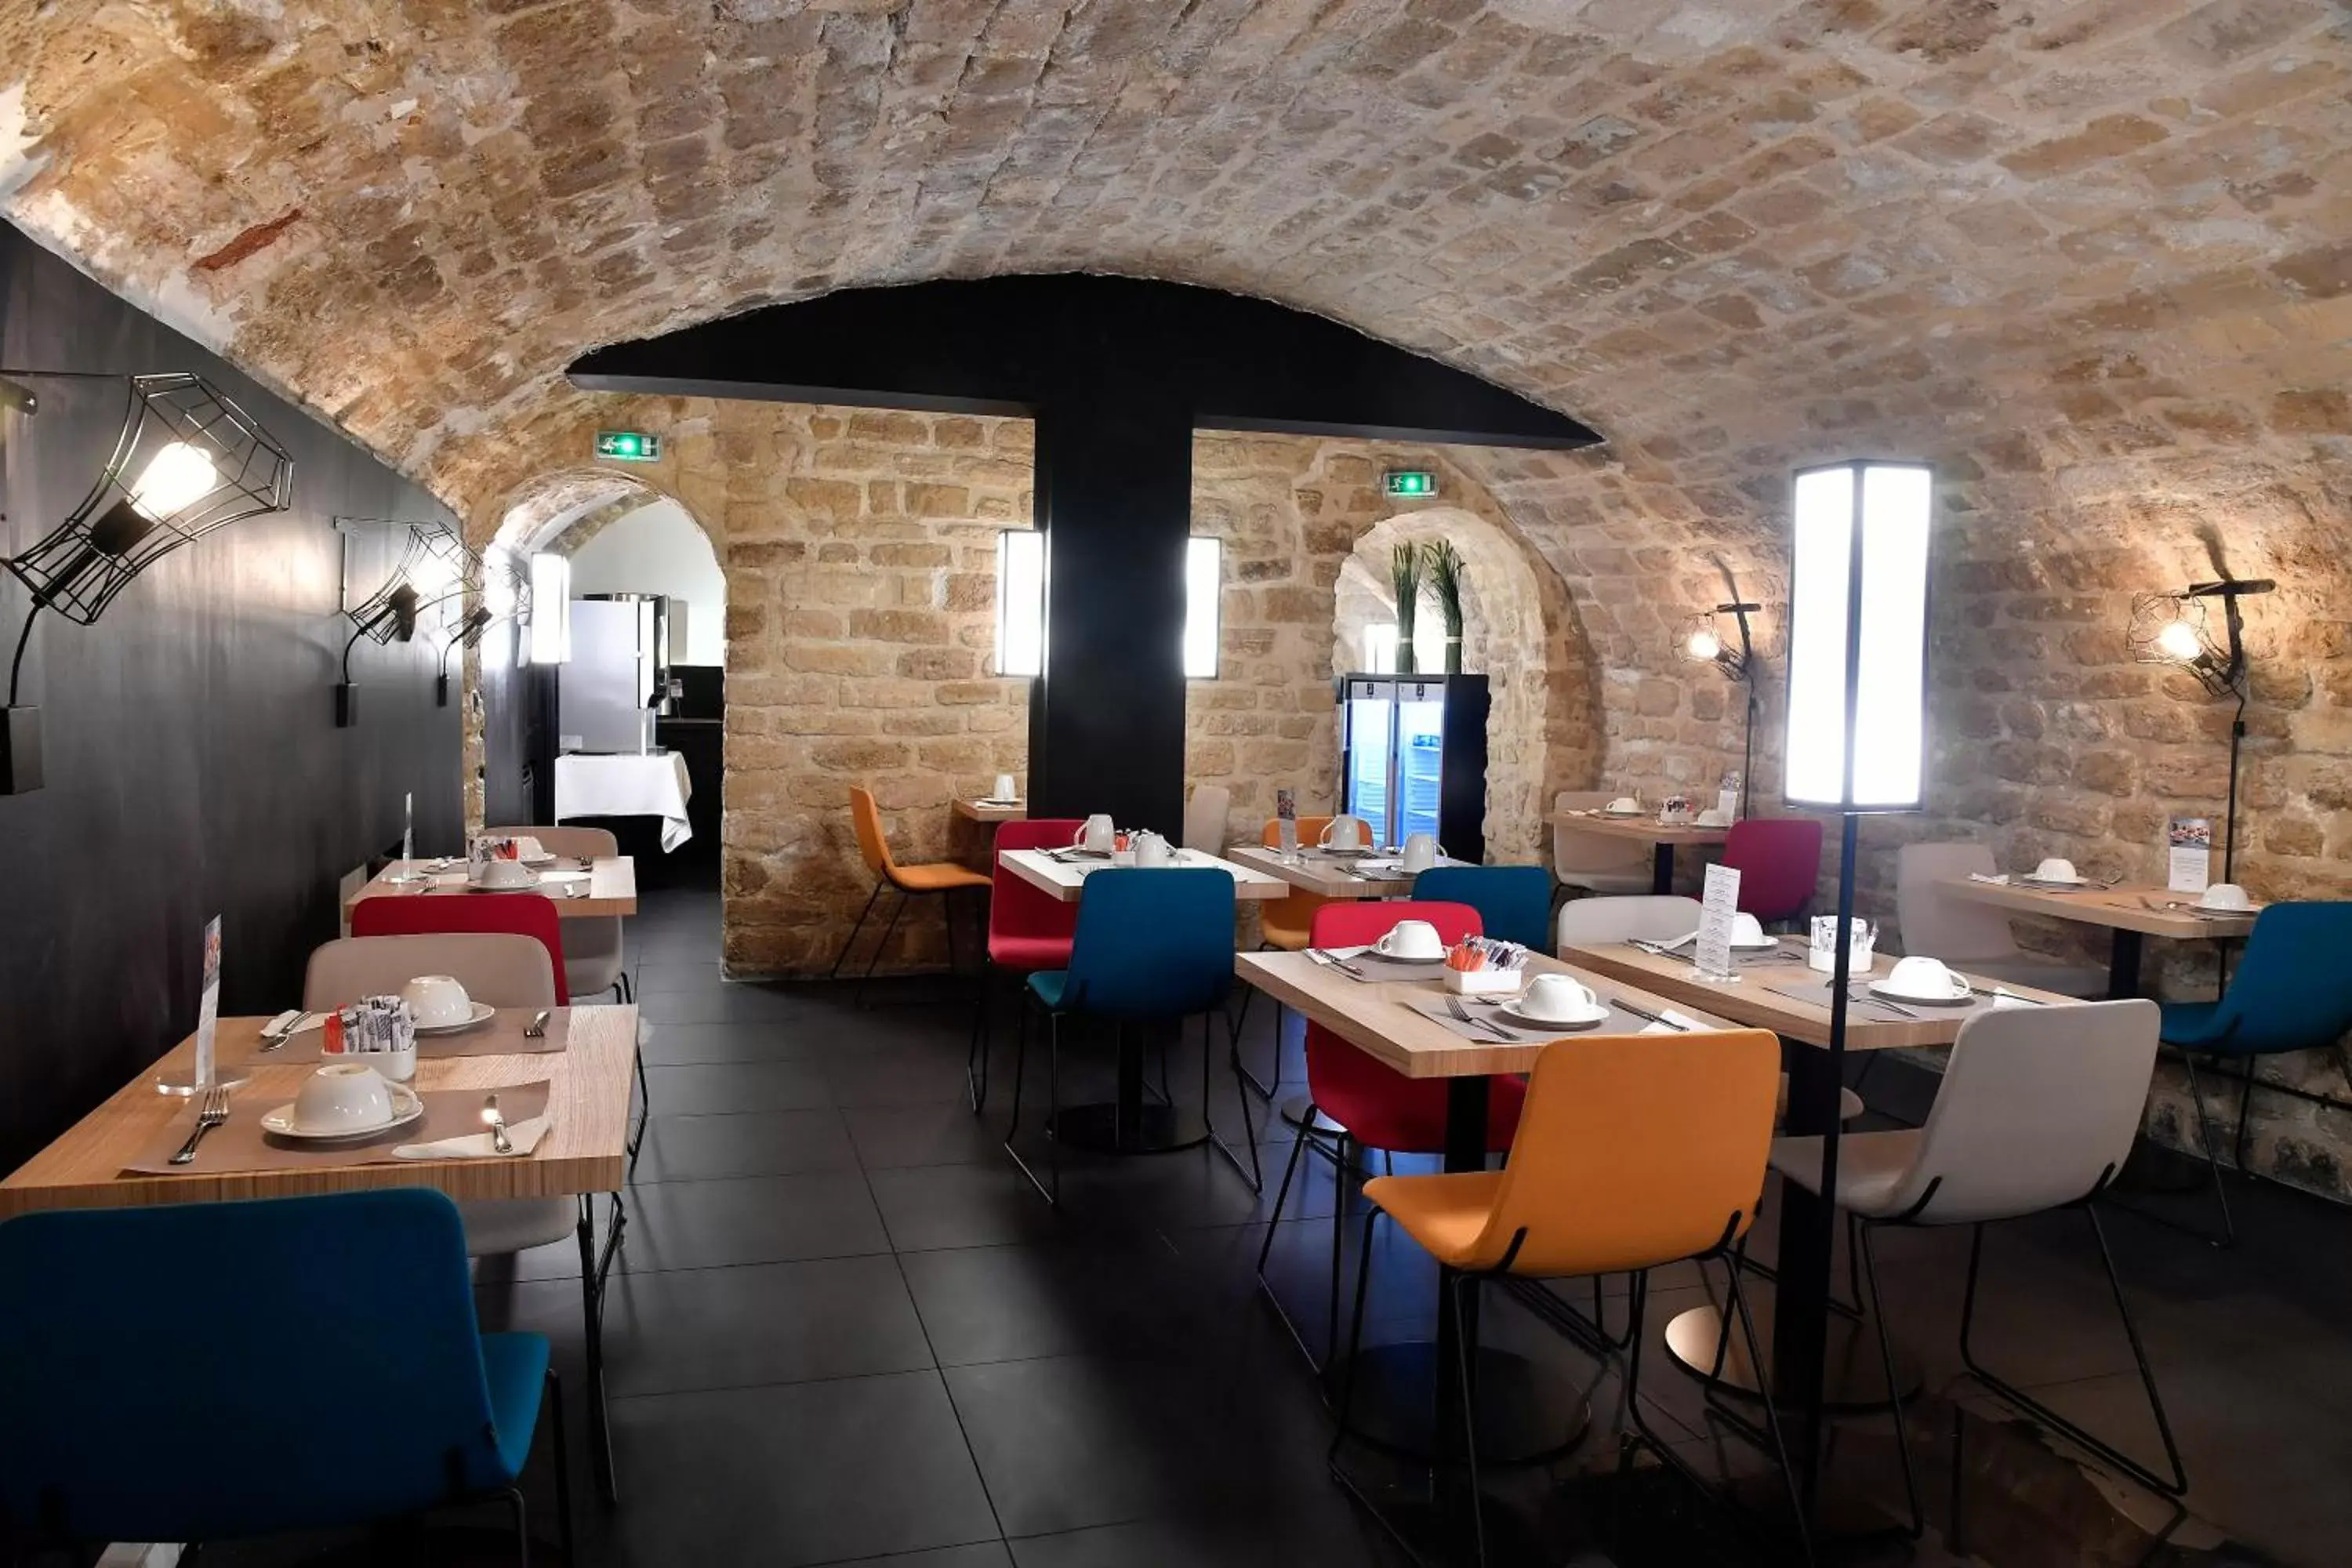 Area and facilities, Restaurant/Places to Eat in Mercure Paris Gare de l'Est